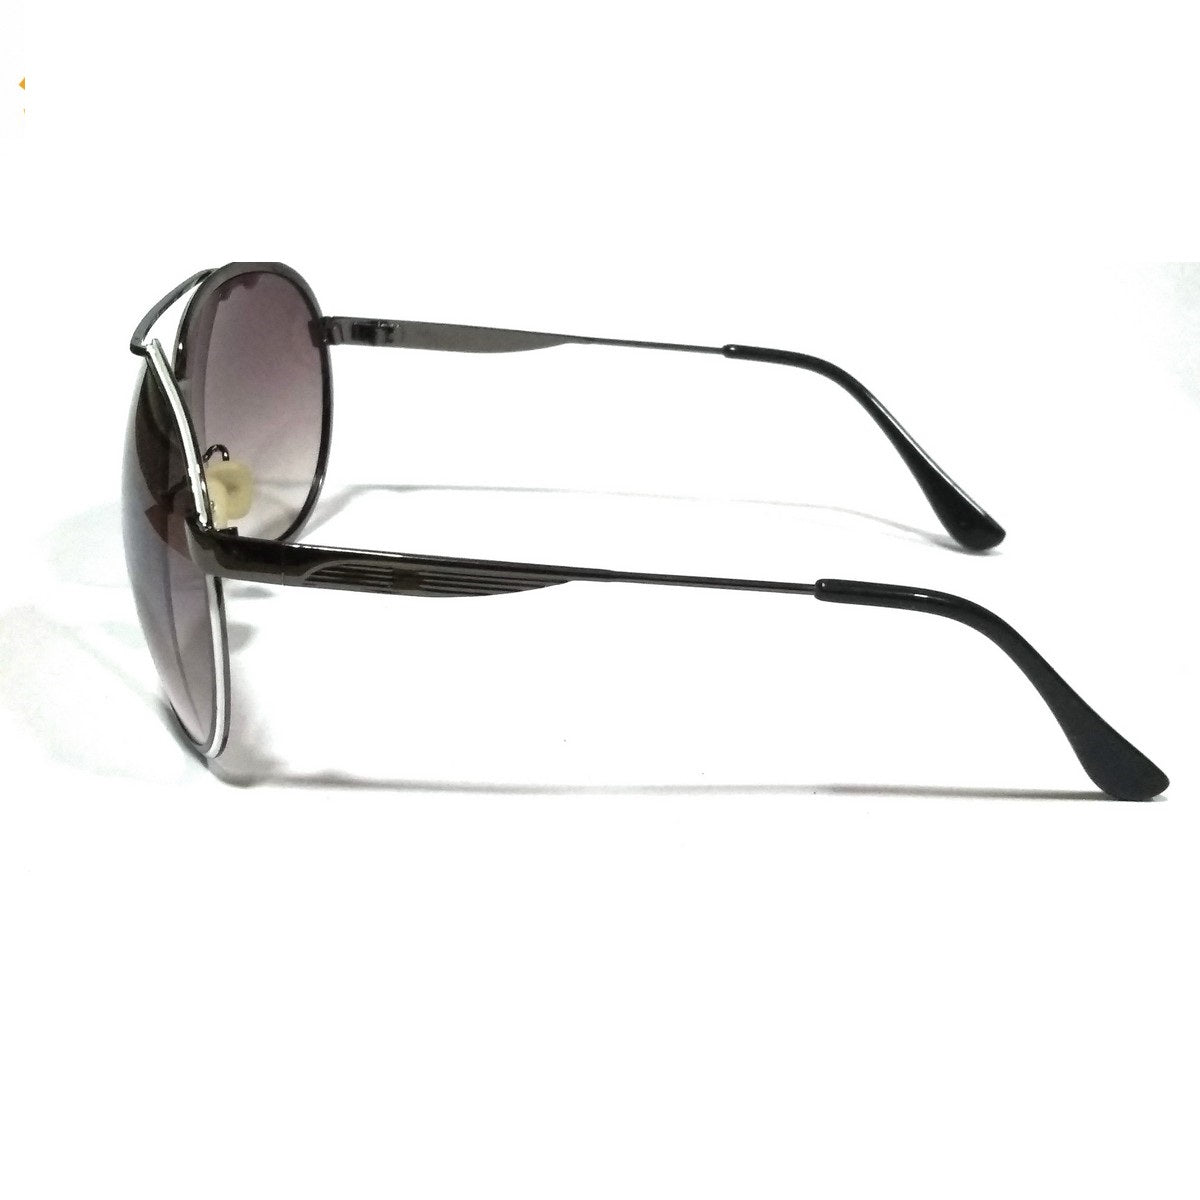 Best Selling Aviators Sunglasses For Men Women GDN2002